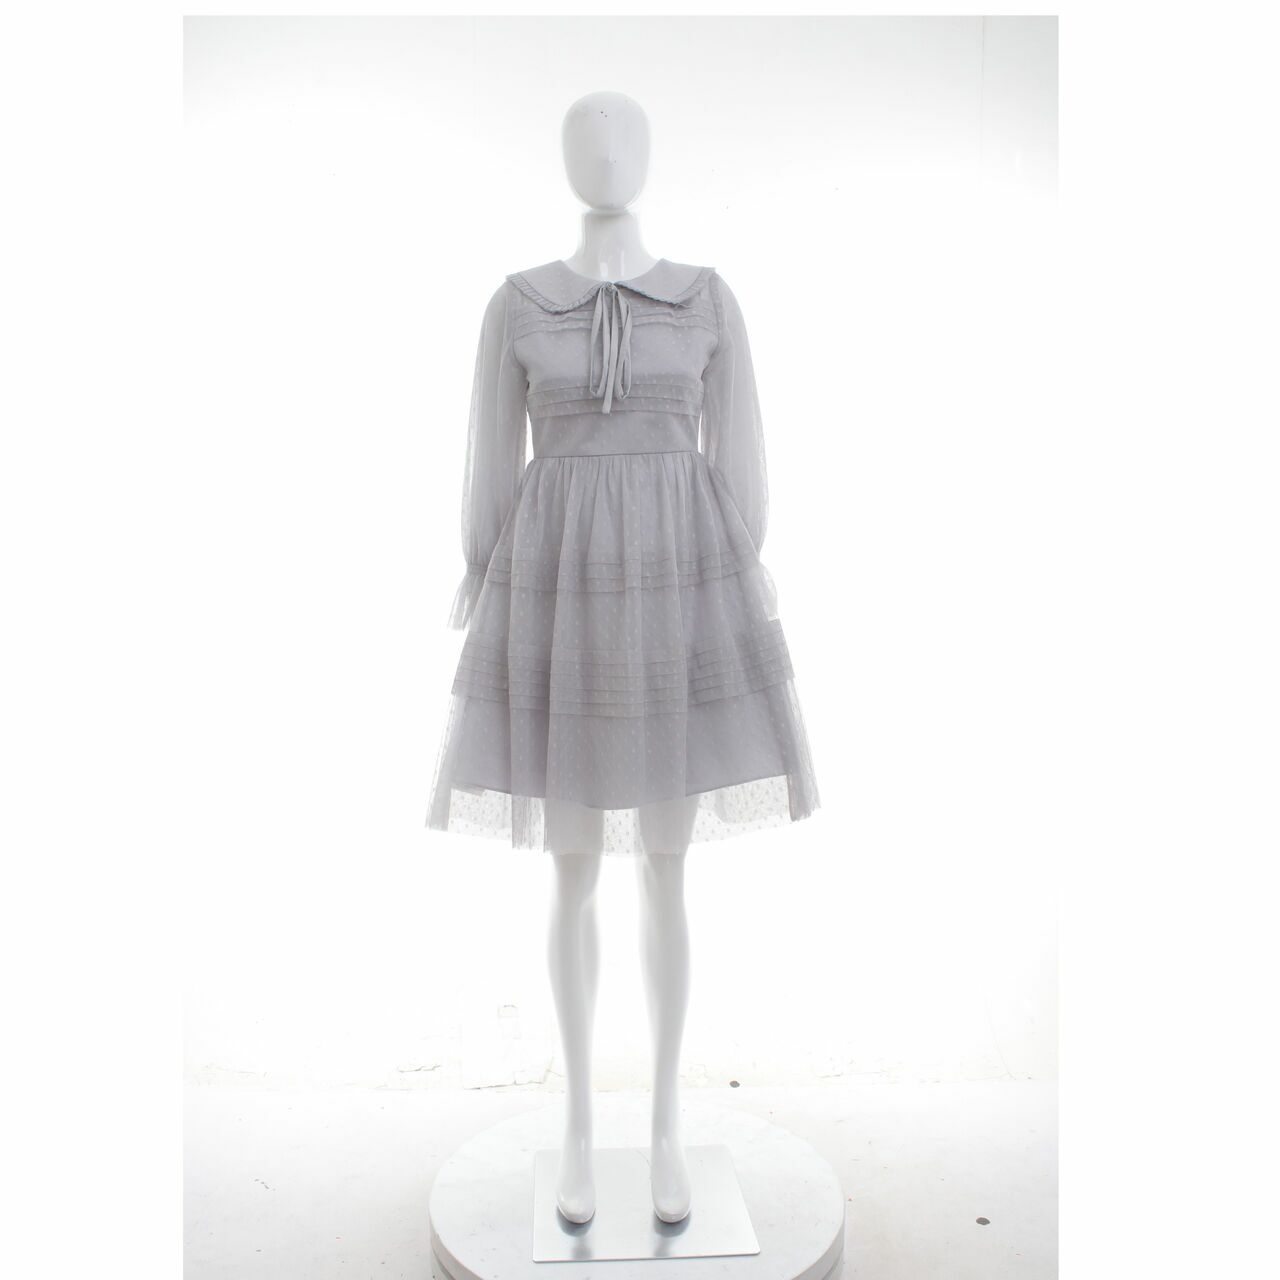 Poshture Grey Mini Dress